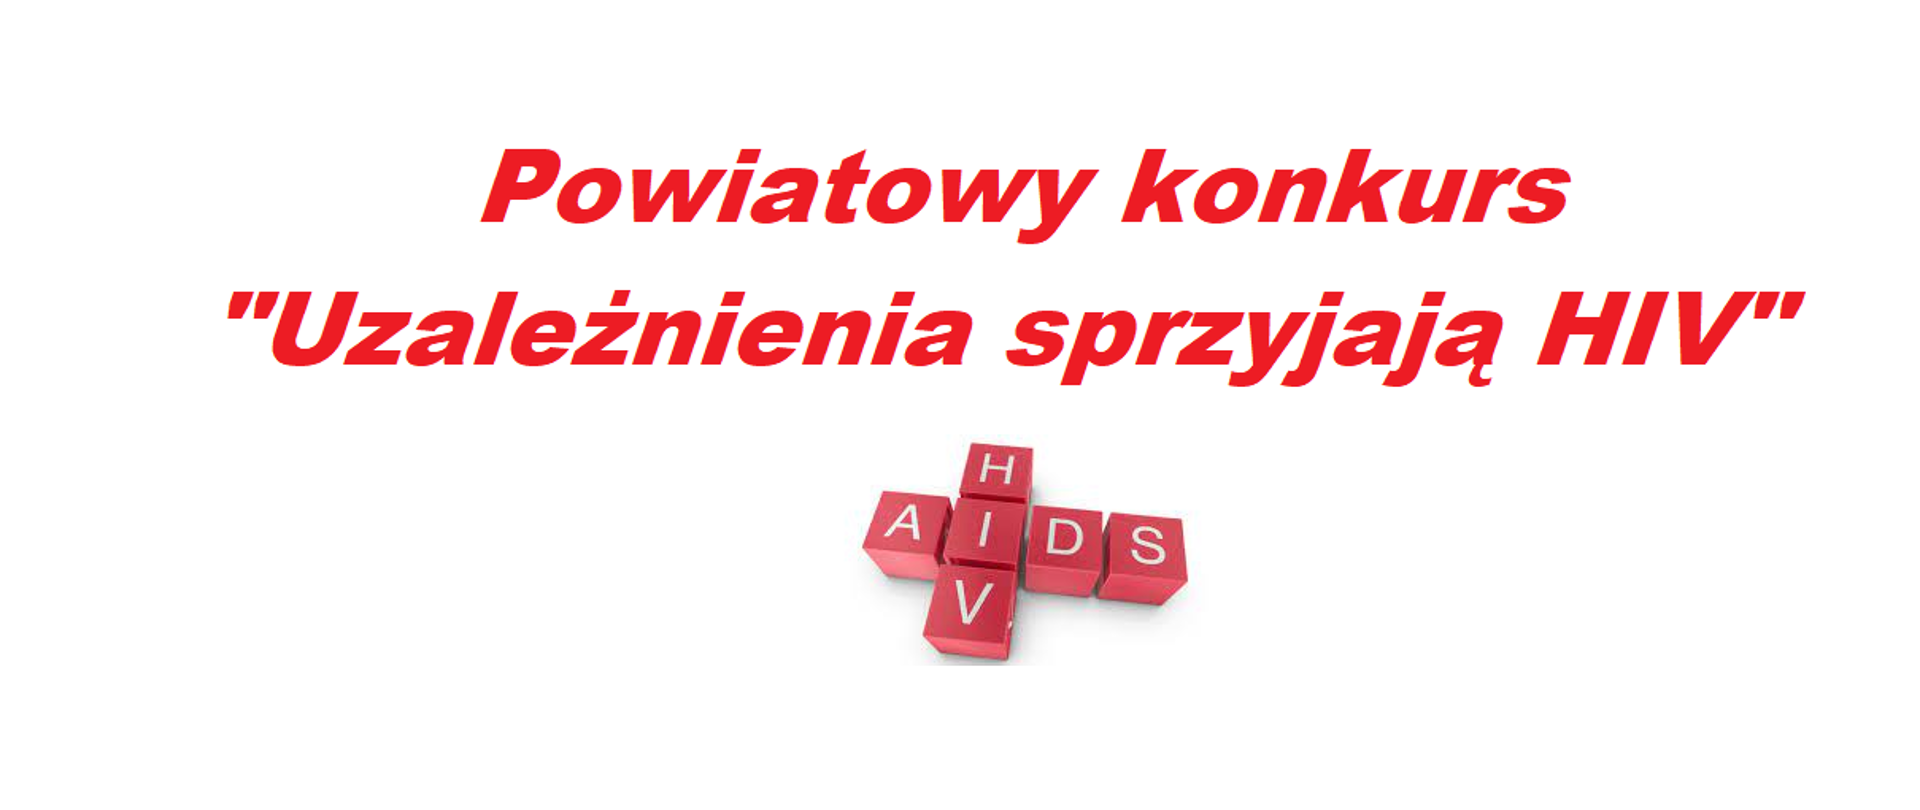 grafika na białym tle, zawierająca napis koloru czerwonego Uzależnienia sprzyjają HIV oraz czerwone kwadraty ułożone w znak krzyża, w każdym kwadracie litera koloru białego tworzące napis HIV AIDS